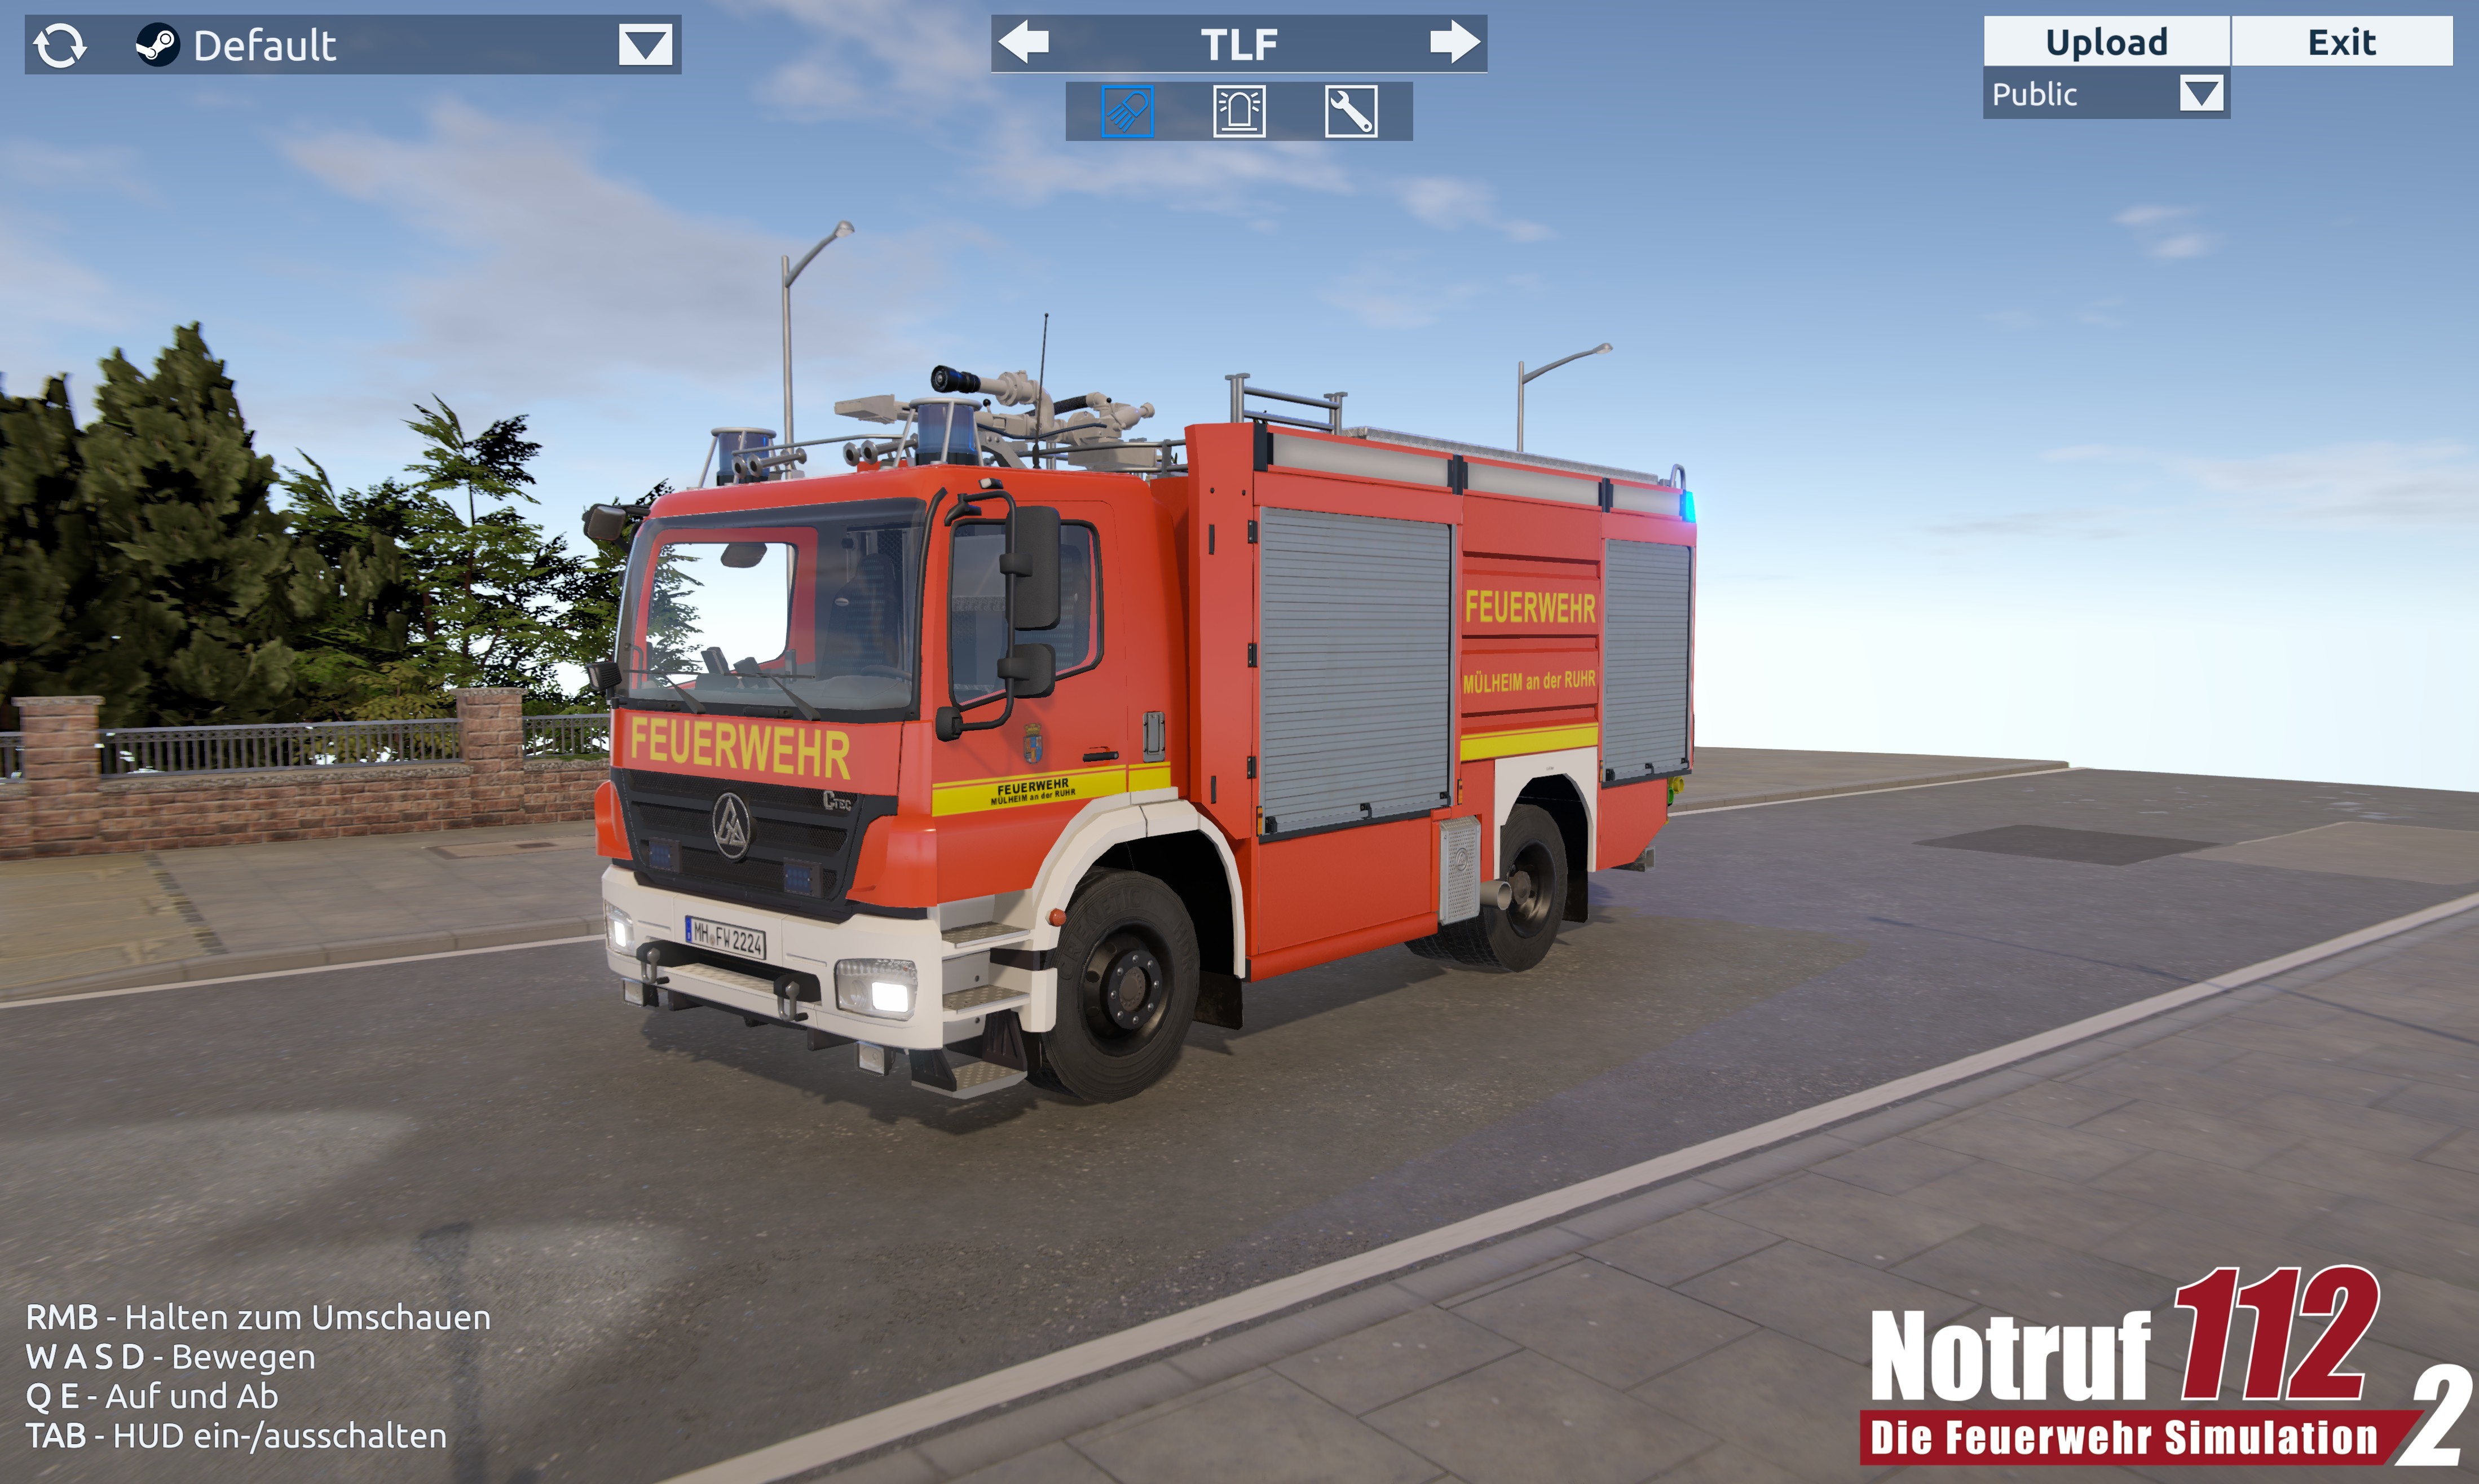 What's On Steam - Notruf 112 - Die Feuerwehr Simulation 2: Showroom